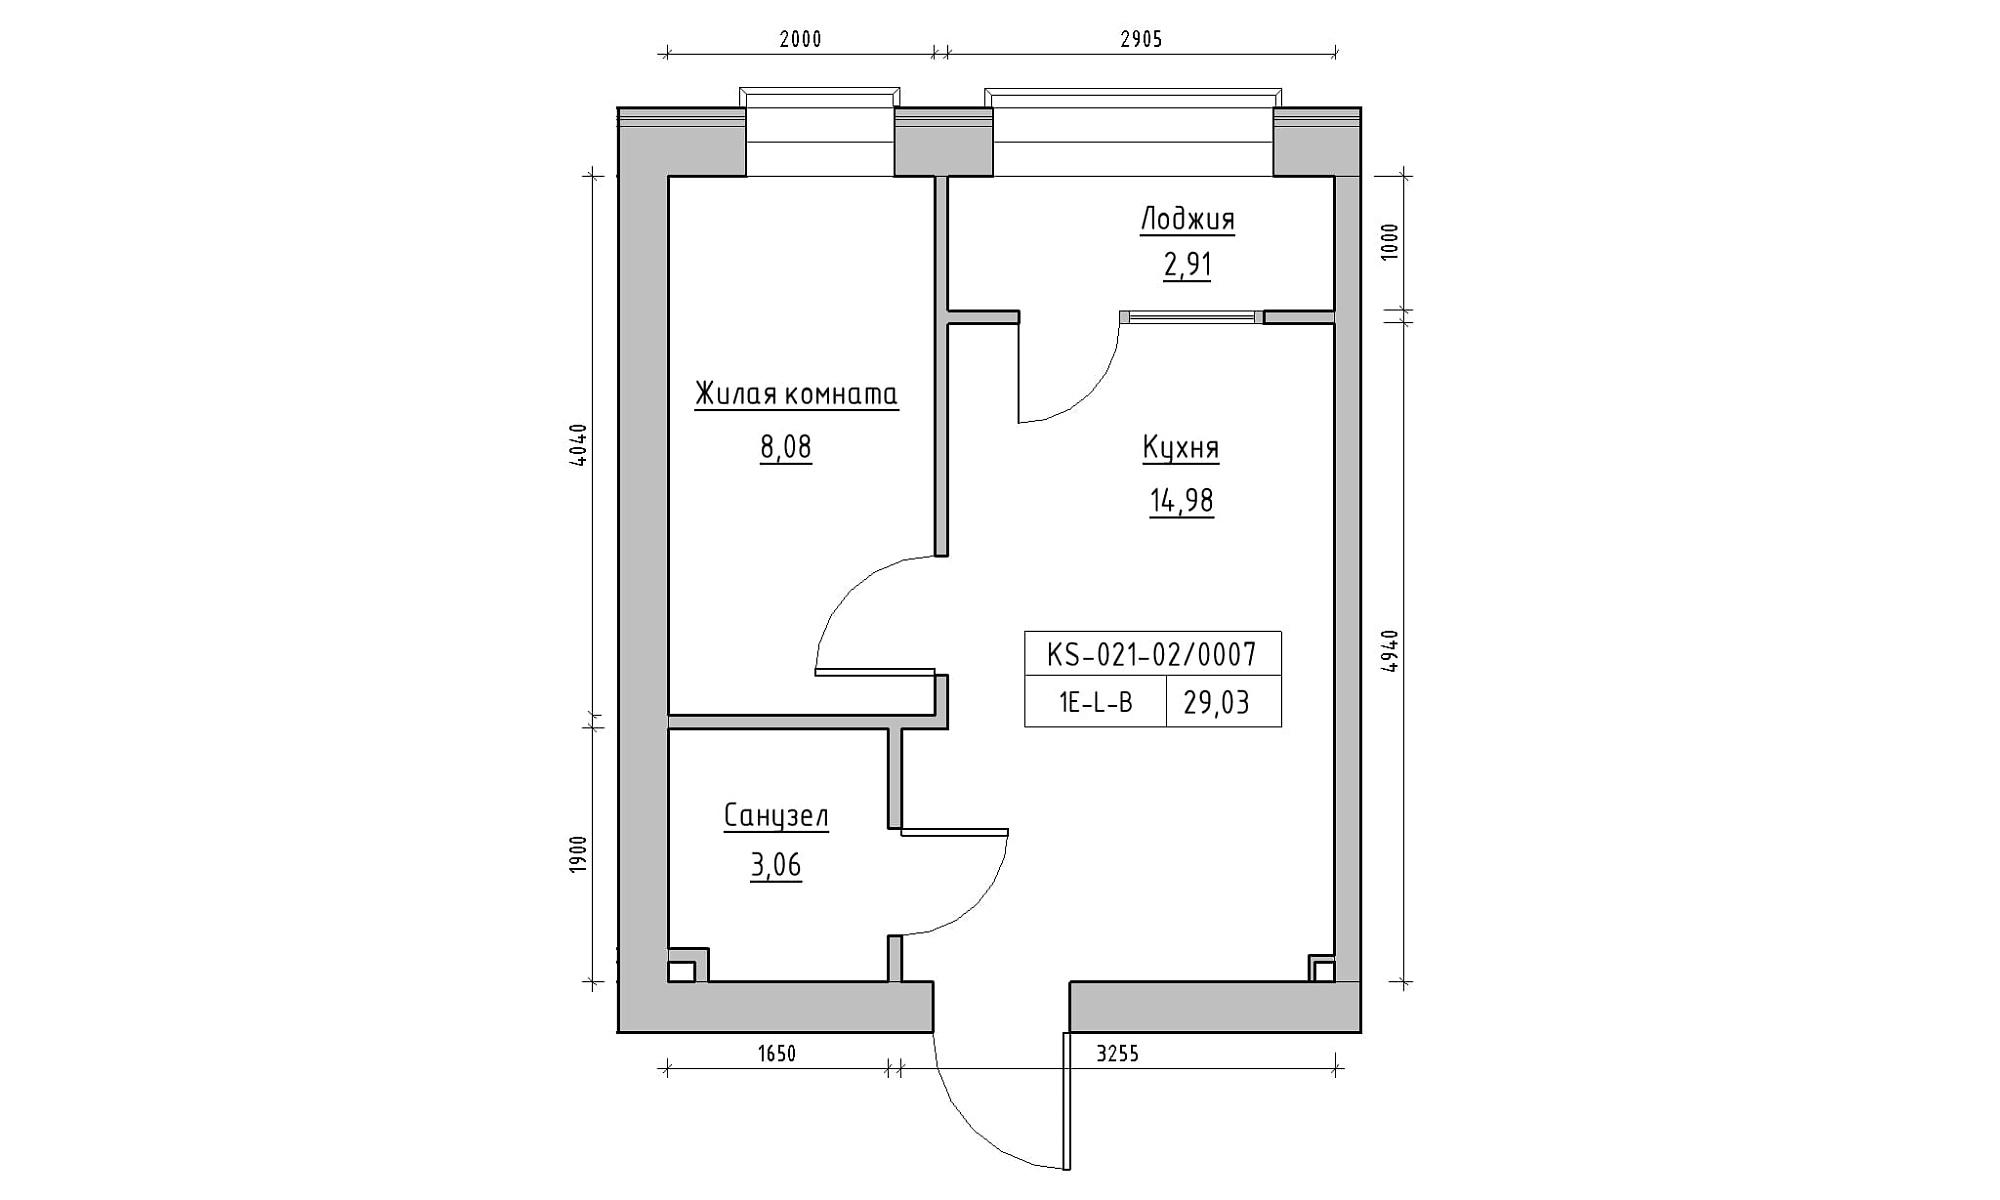 Планування 1-к квартира площею 29.03м2, KS-021-02/0007.